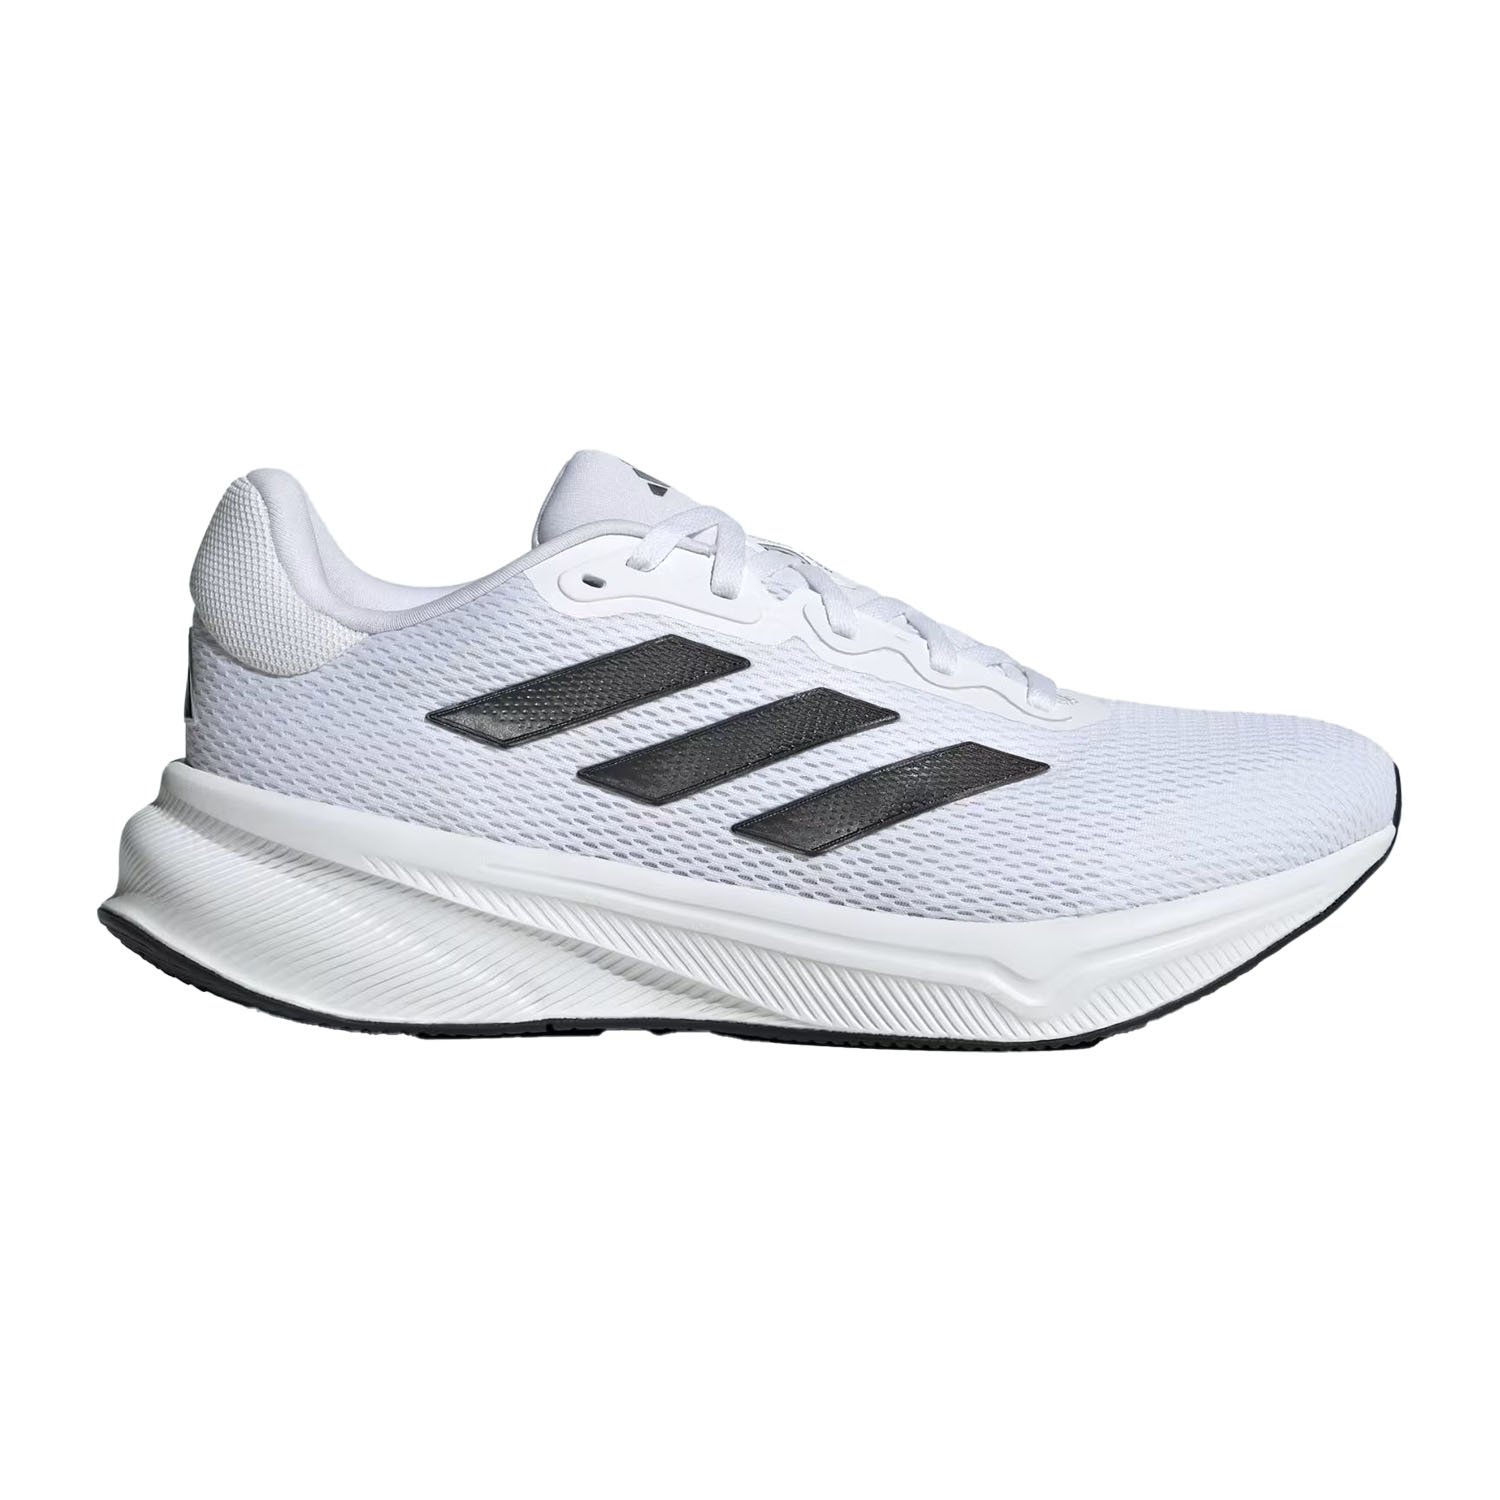 Adidas Response Erkek Koşu Ayakkabısı - Beyaz - 1